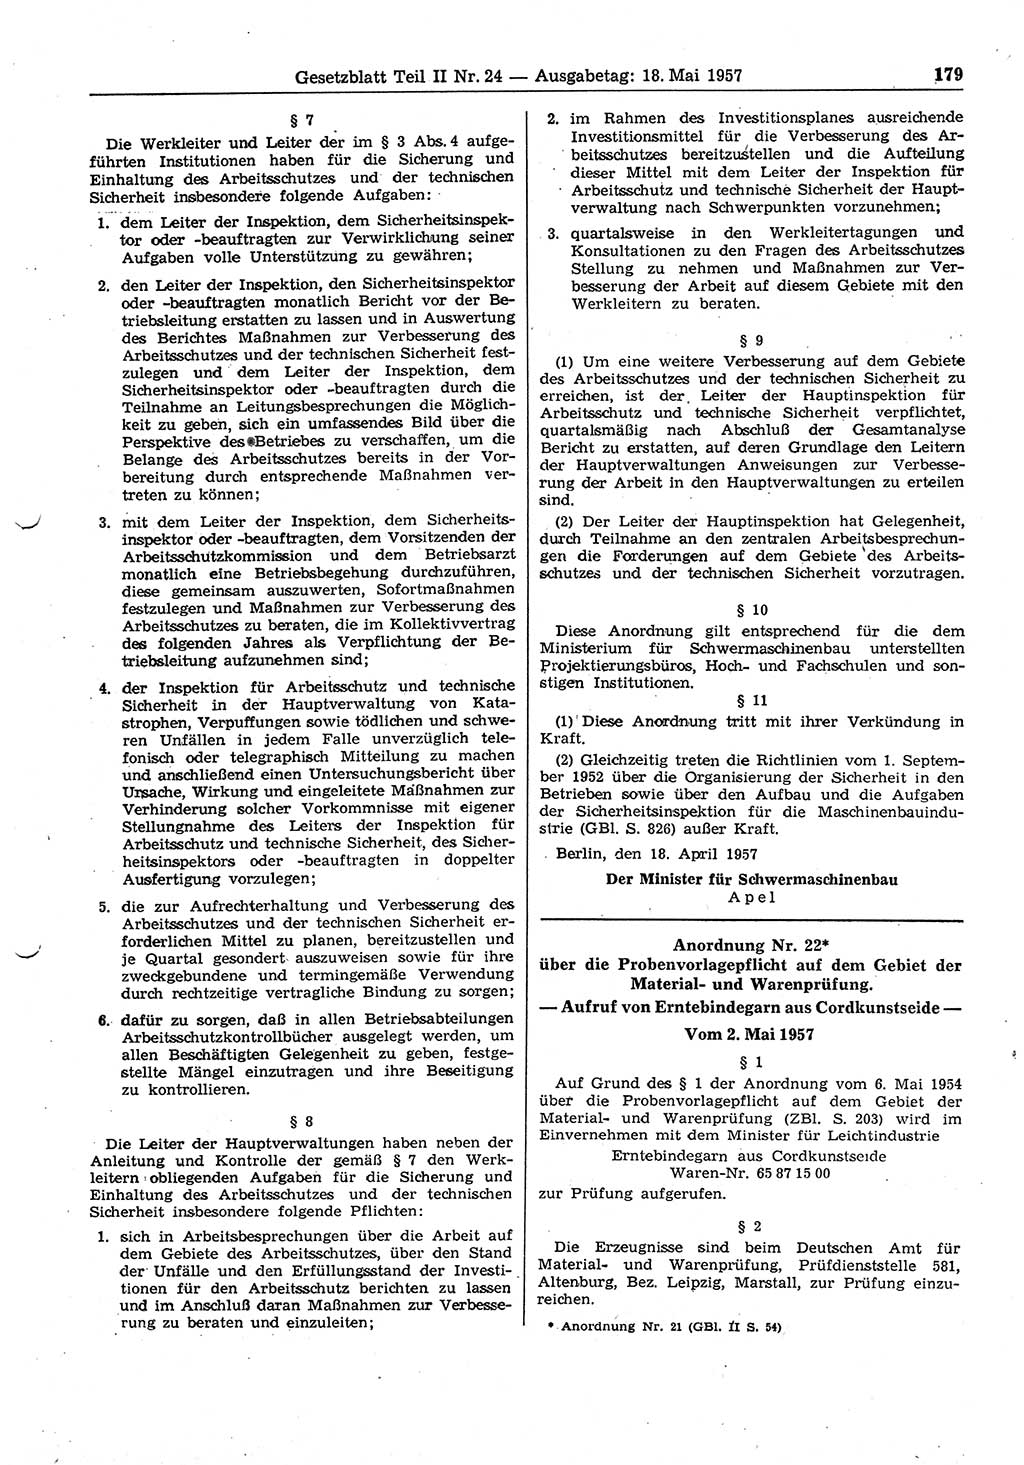 Gesetzblatt (GBl.) der Deutschen Demokratischen Republik (DDR) Teil ⅠⅠ 1957, Seite 179 (GBl. DDR ⅠⅠ 1957, S. 179)